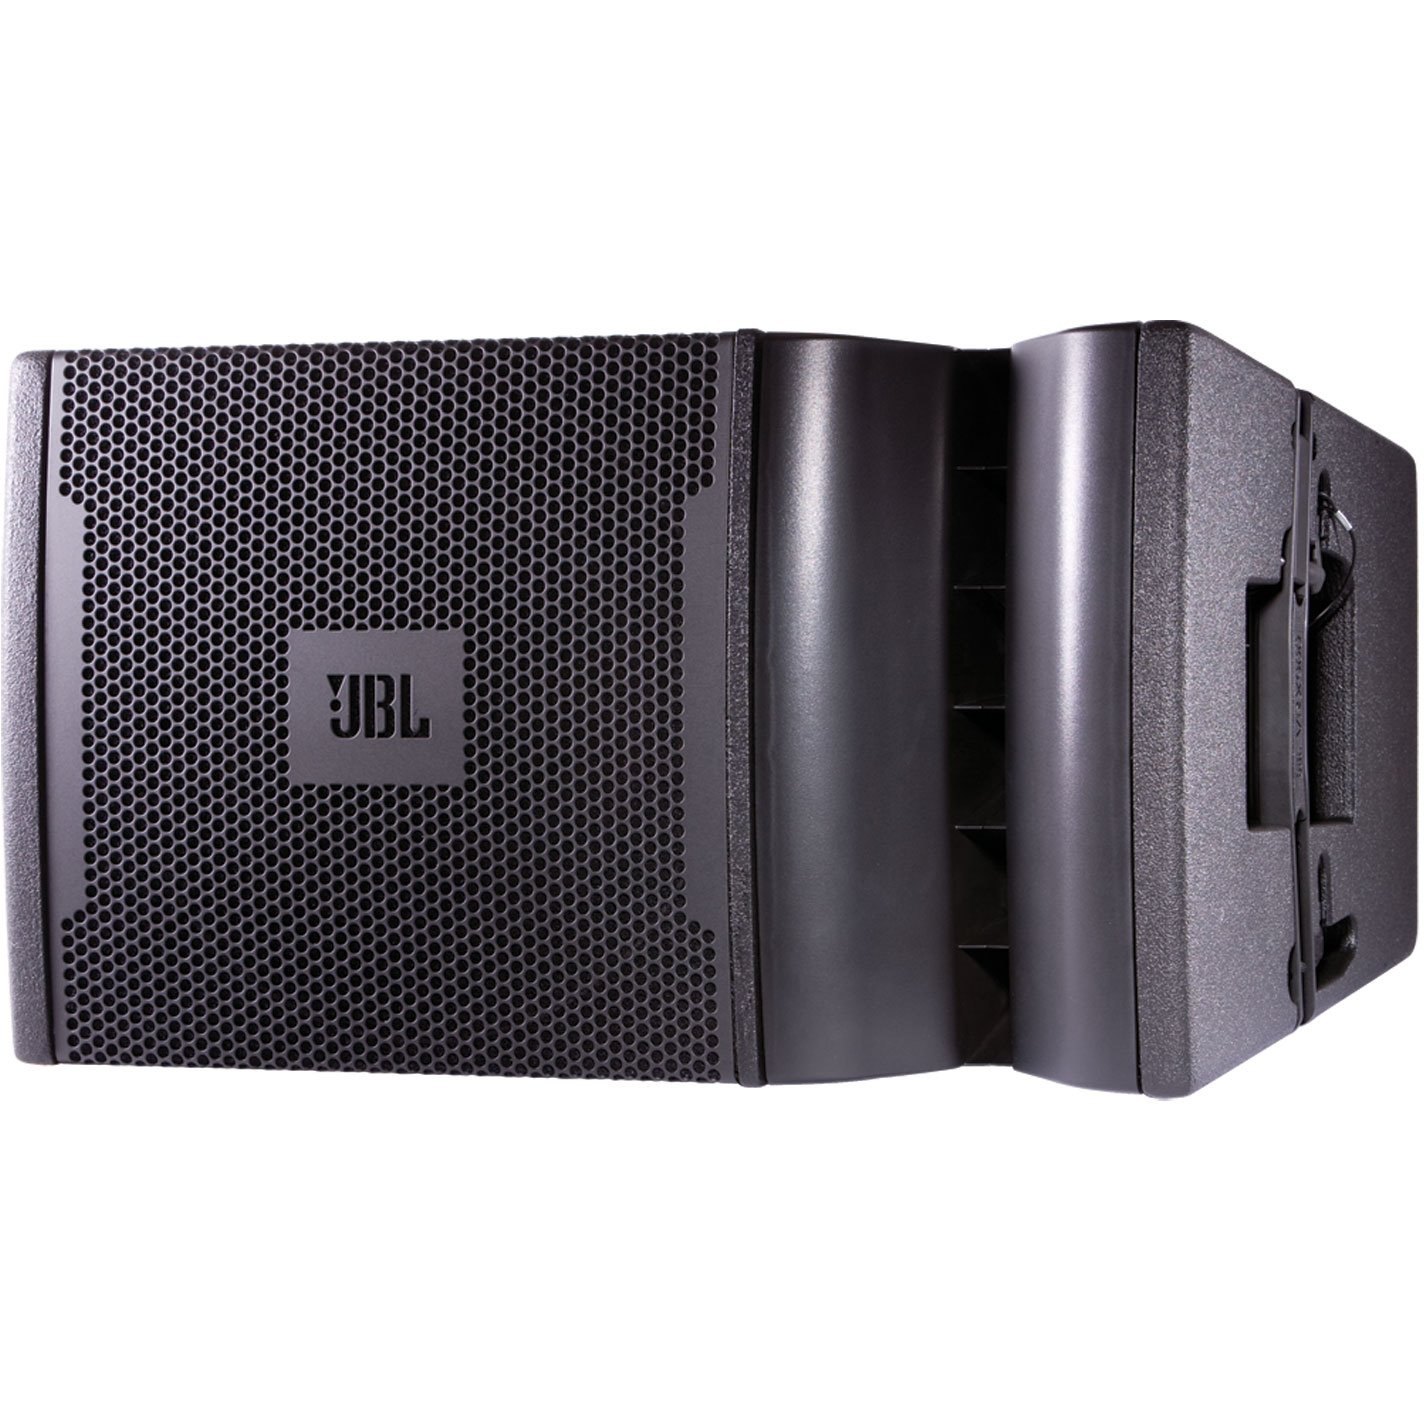 JBL Professional VRX932LA-1 2-way Outdoor Pole Mount Speaker - 800 W RMS - Black